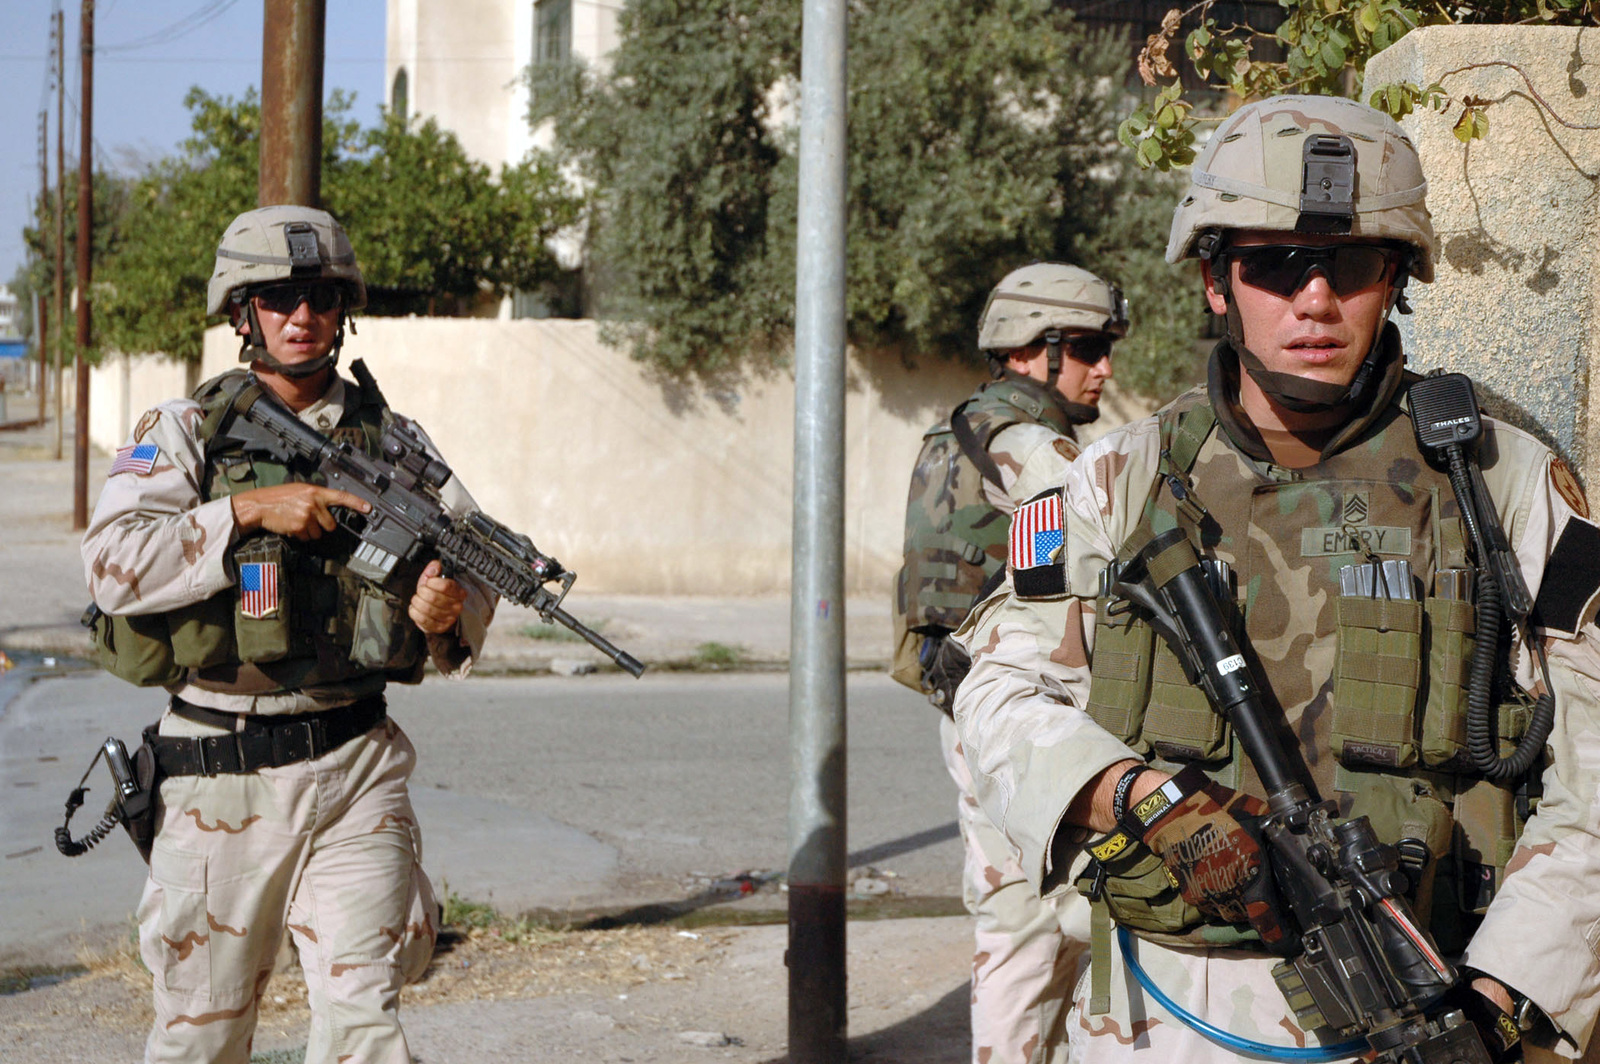 Американские военные в ираке. Снаряжение солдат США В Ираке 2003. Американский спецназ в Ираке 2003. Форма США В Ираке 2003.